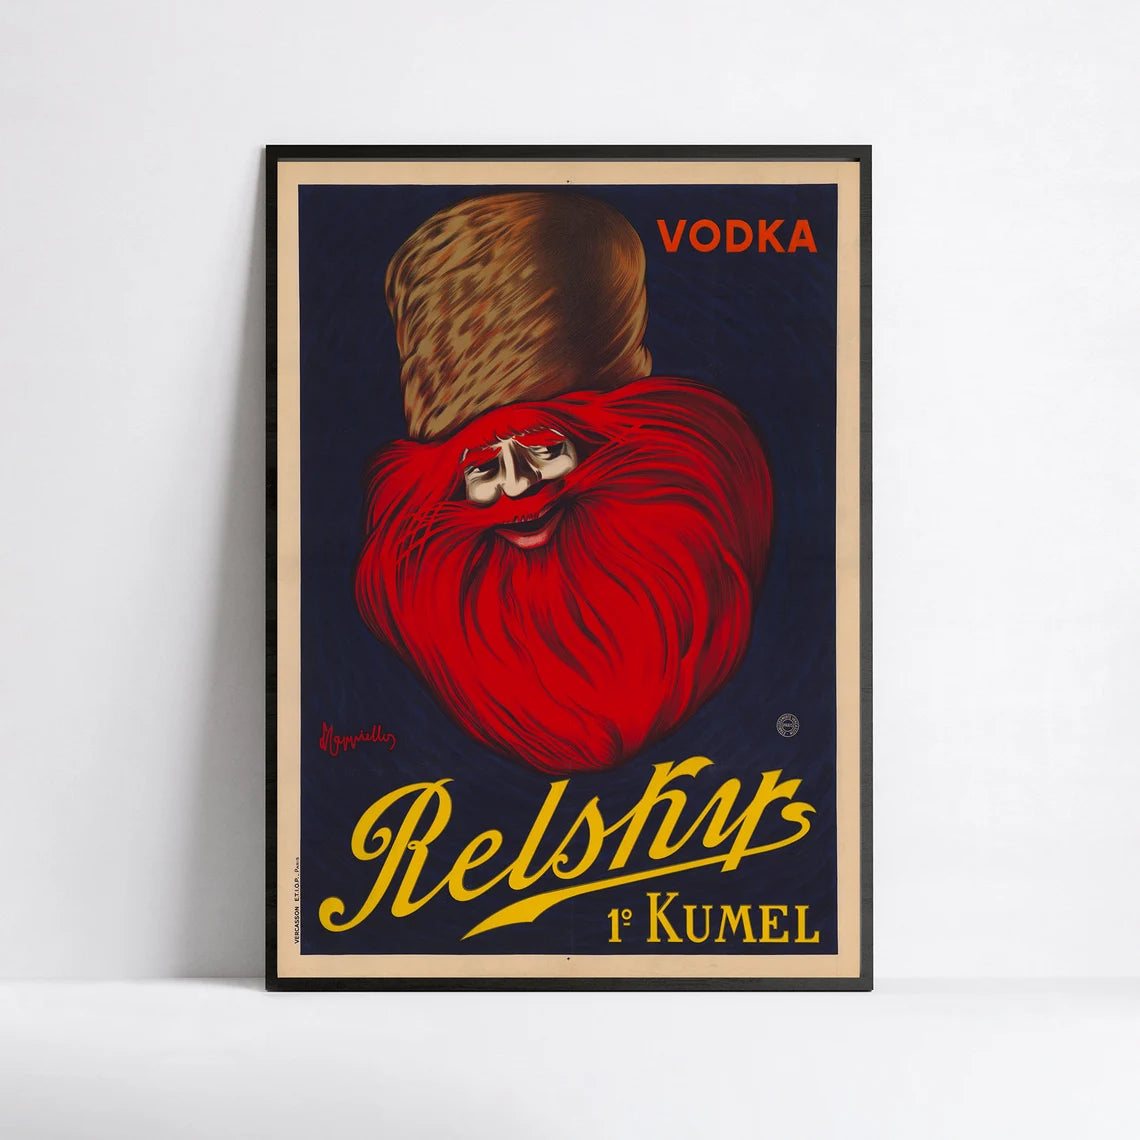 Affiche alcool vintage "Vodka Relsky" - Leonetto Cappiello - Haute Définition - papier mat 230gr/m2